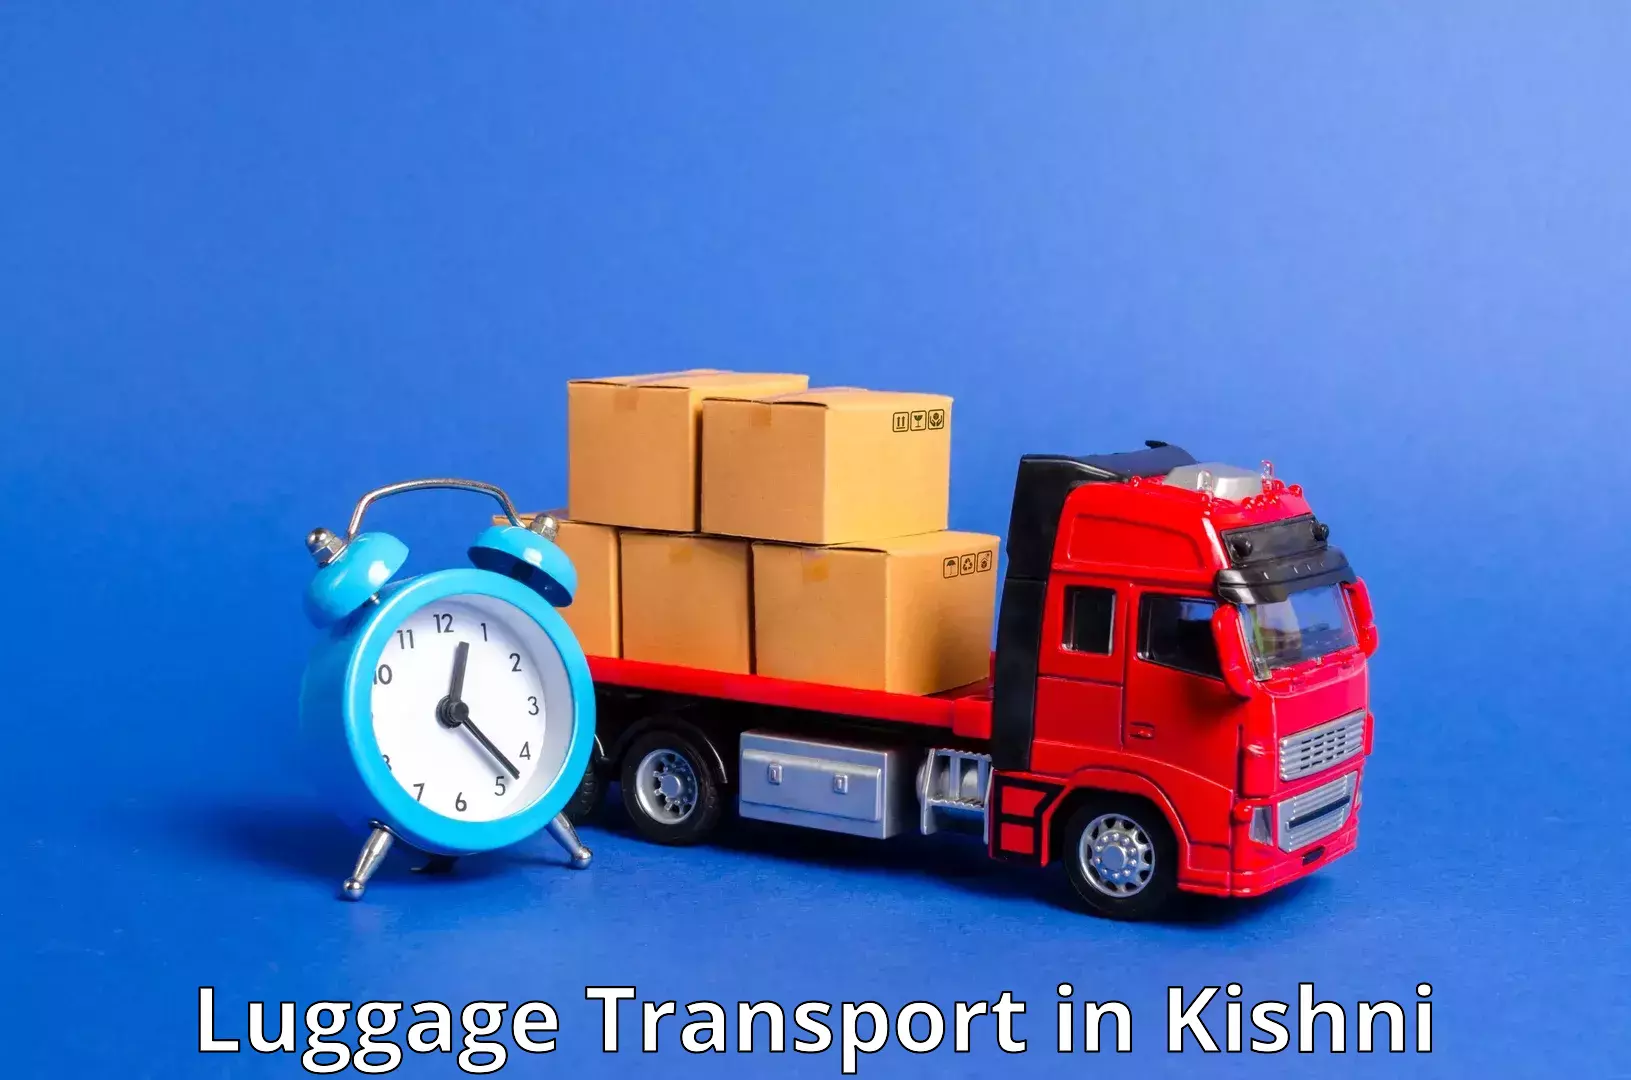 Corporate baggage transport in Kishni